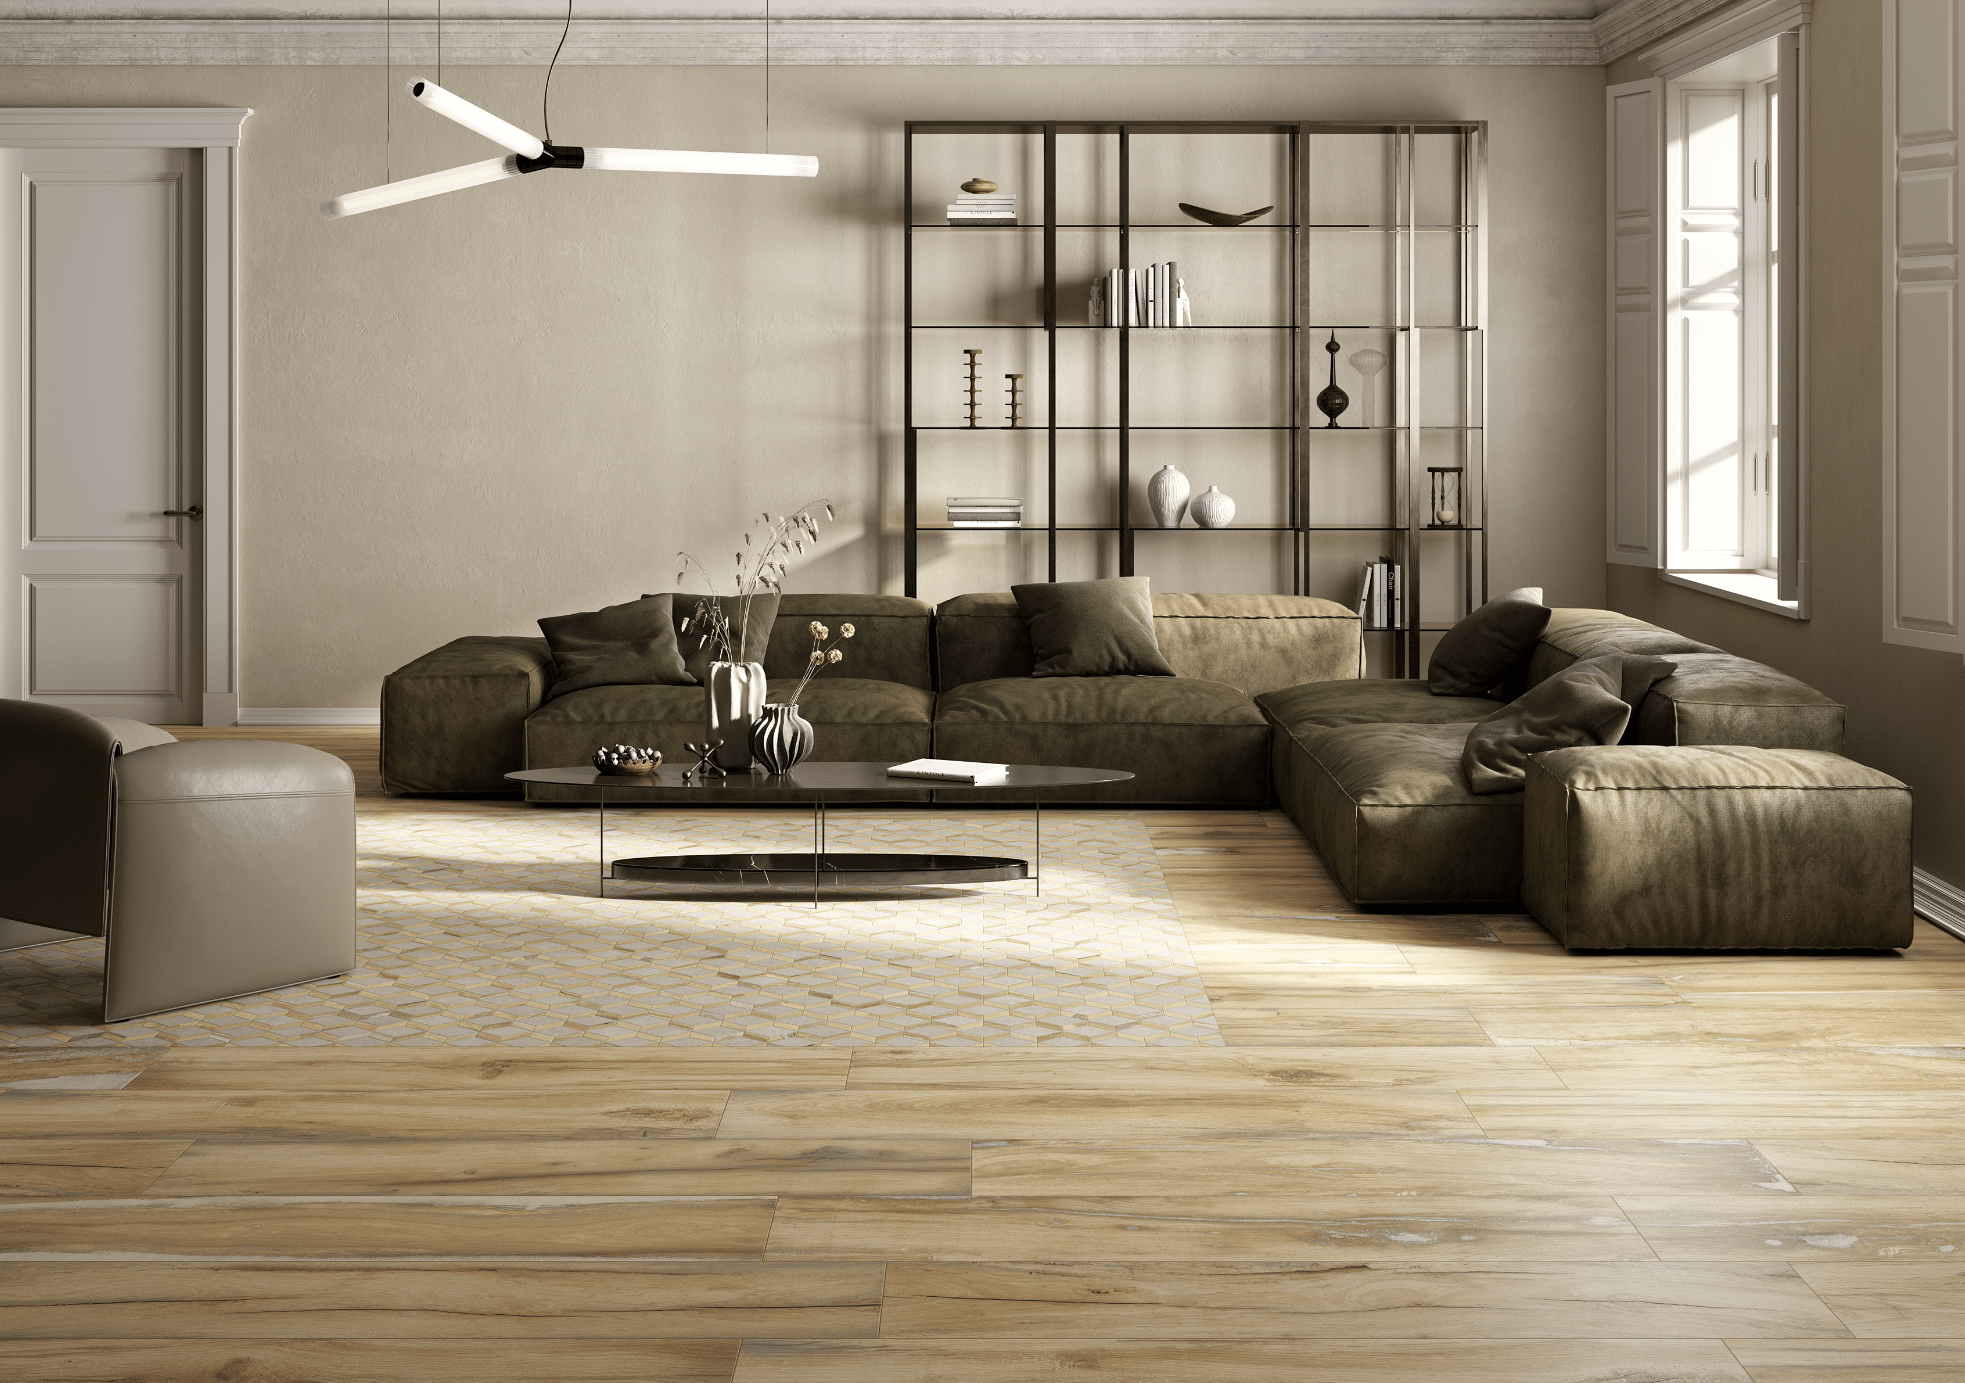 Fliesendorf zeigt ein Wohnzimmer mit gefliestem Boden in Holzoptik, einer olivgrünen Couch aus Leder, ovalem Beistelltisch und schwarzem Wandregal mit Dekoelementen.